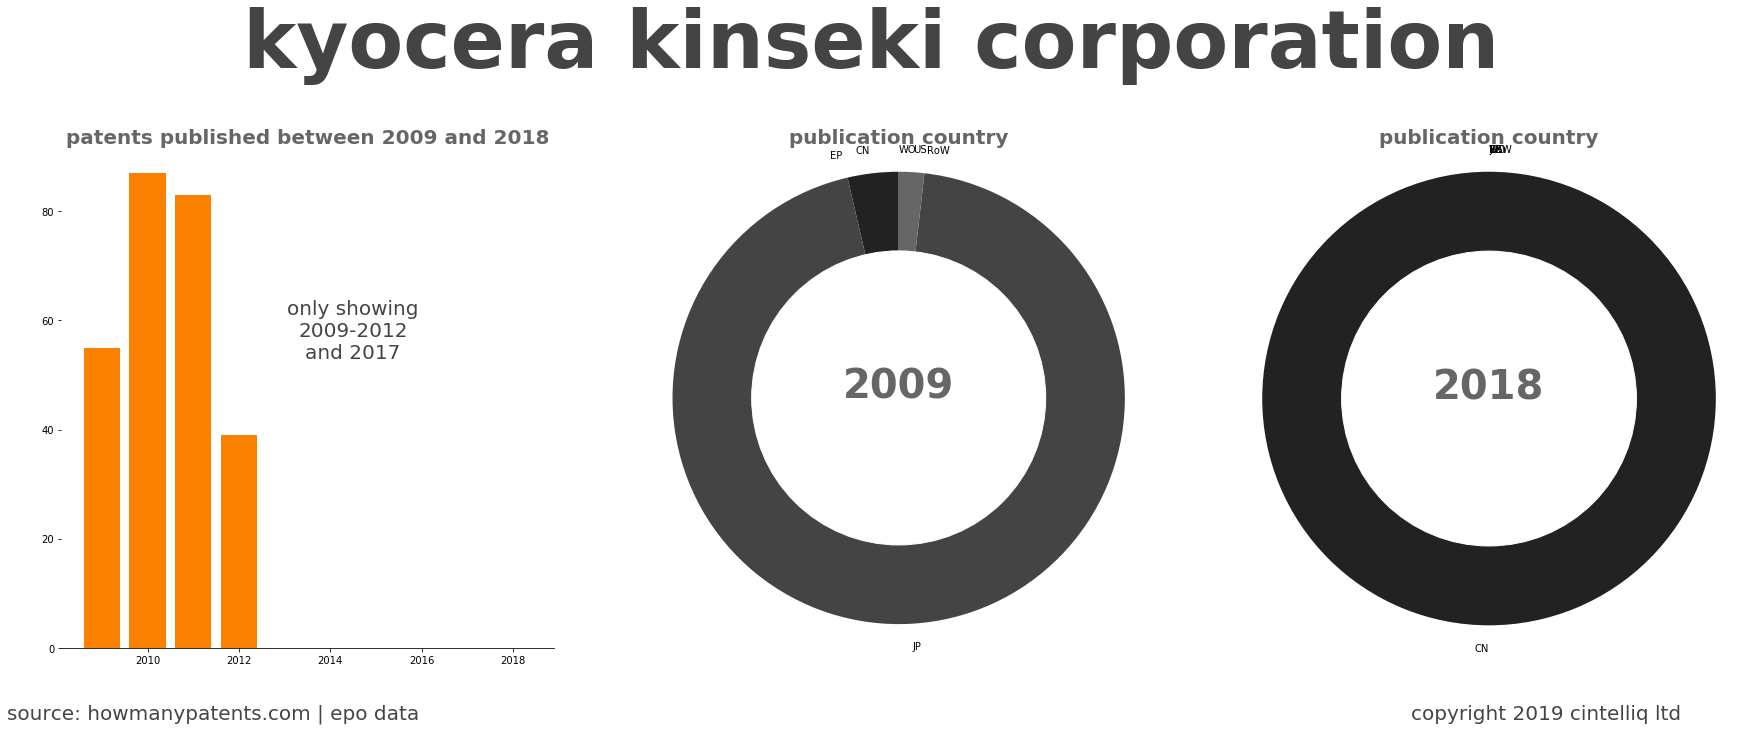 summary of patents for Kyocera Kinseki Corporation